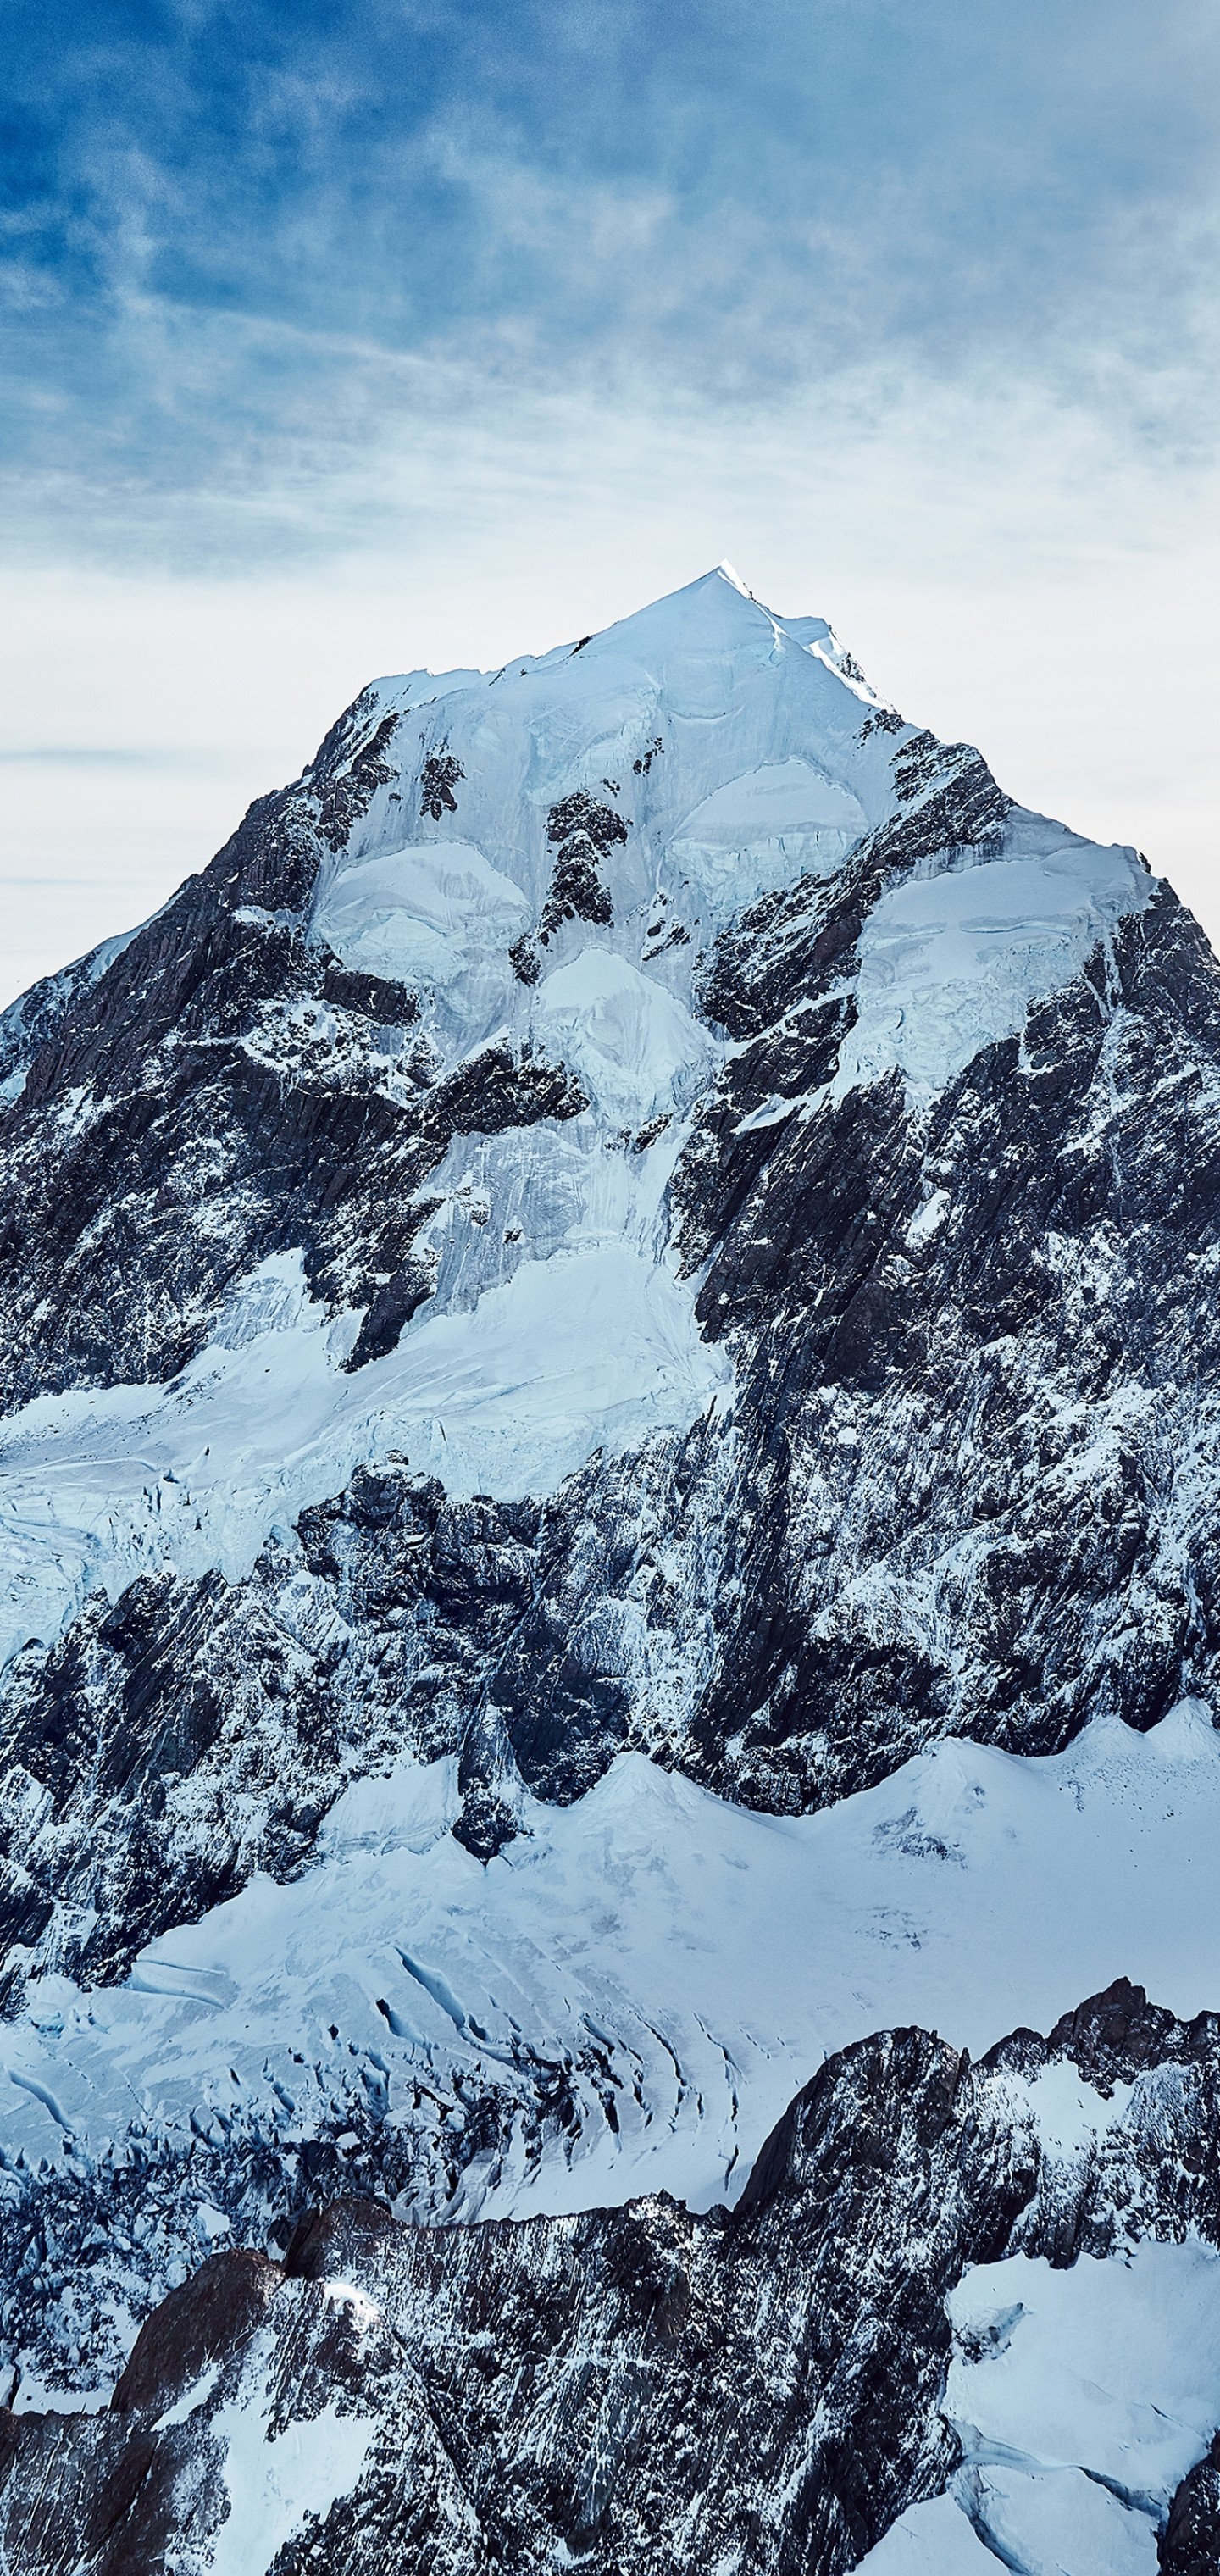 石山，大雪覆盖的山脉风景手机壁纸